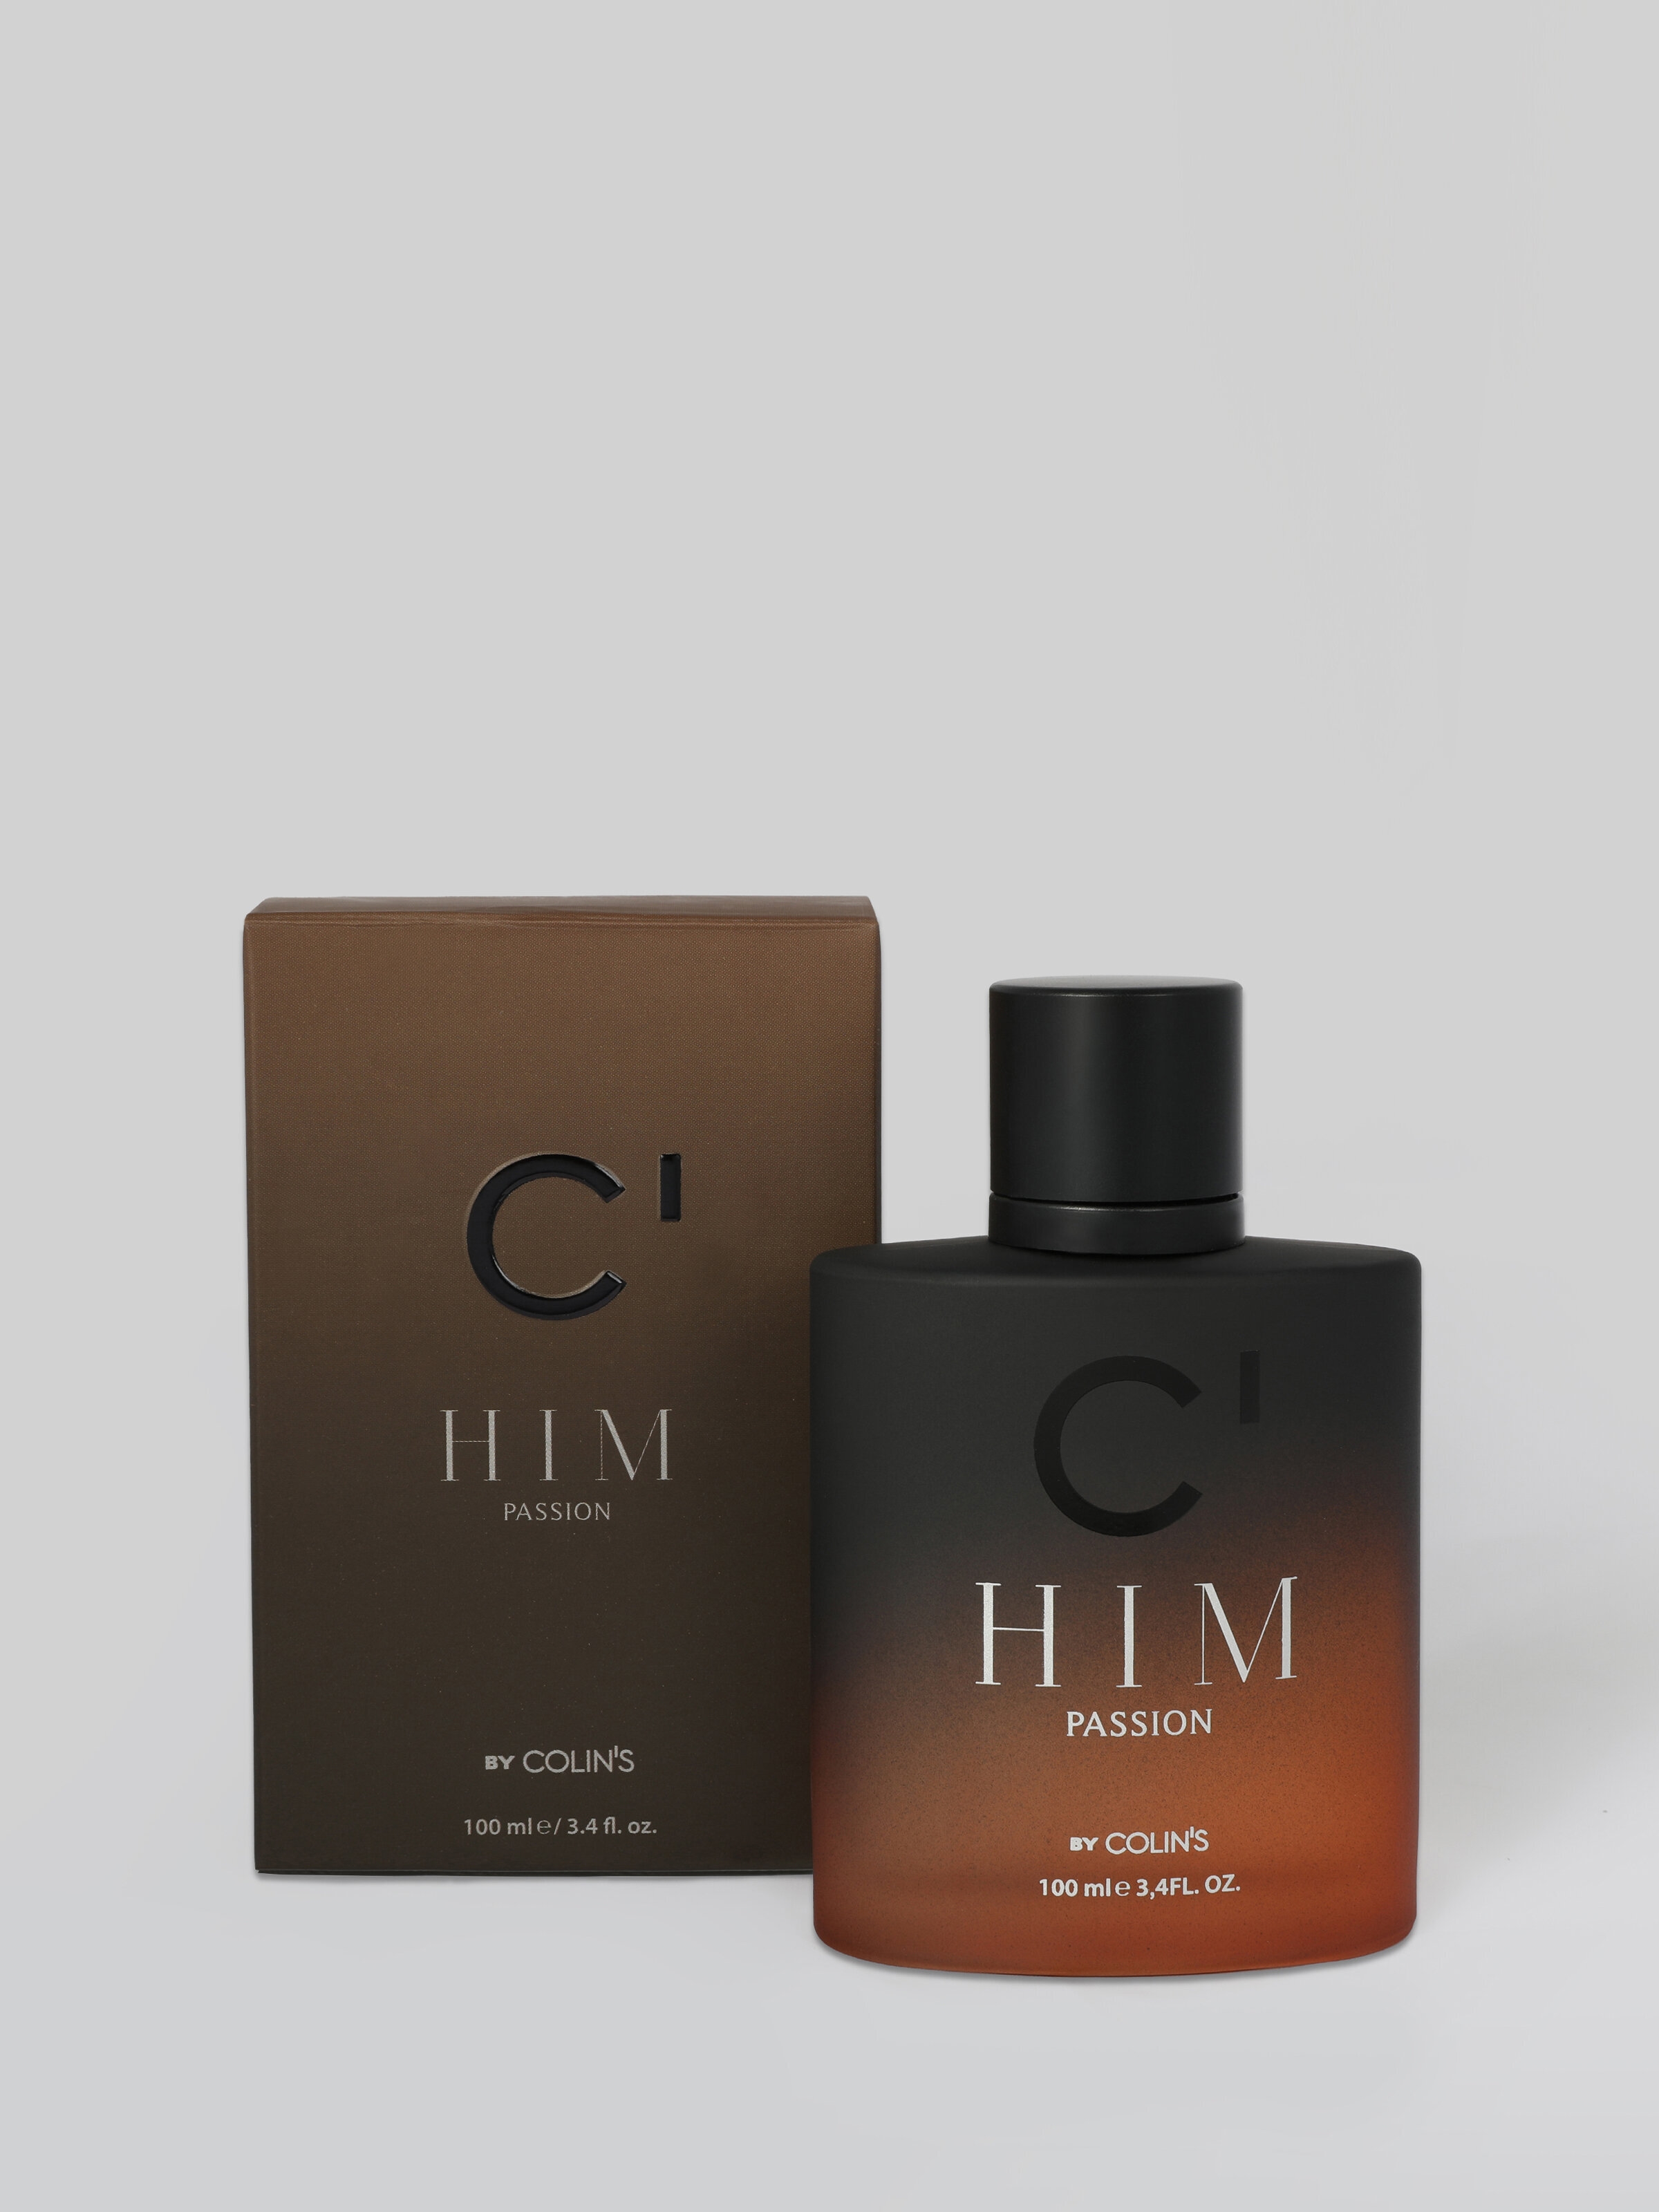 Colins C HIM – Passion Baharatlı Odunsu Erkek Parfüm. 1